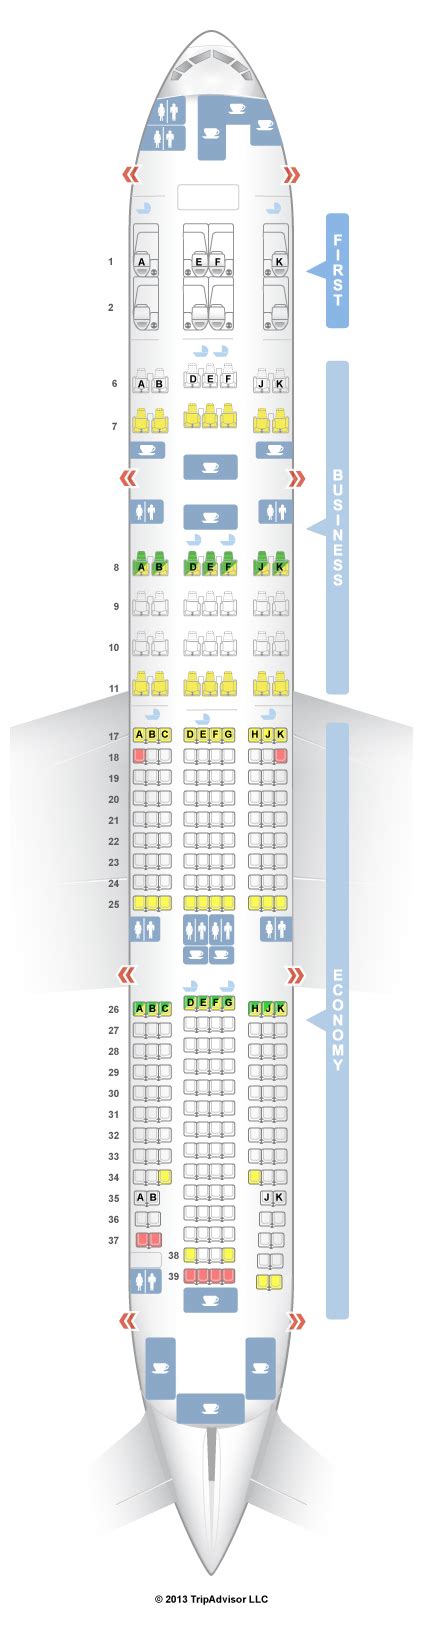 boeing 777-200lr seat map